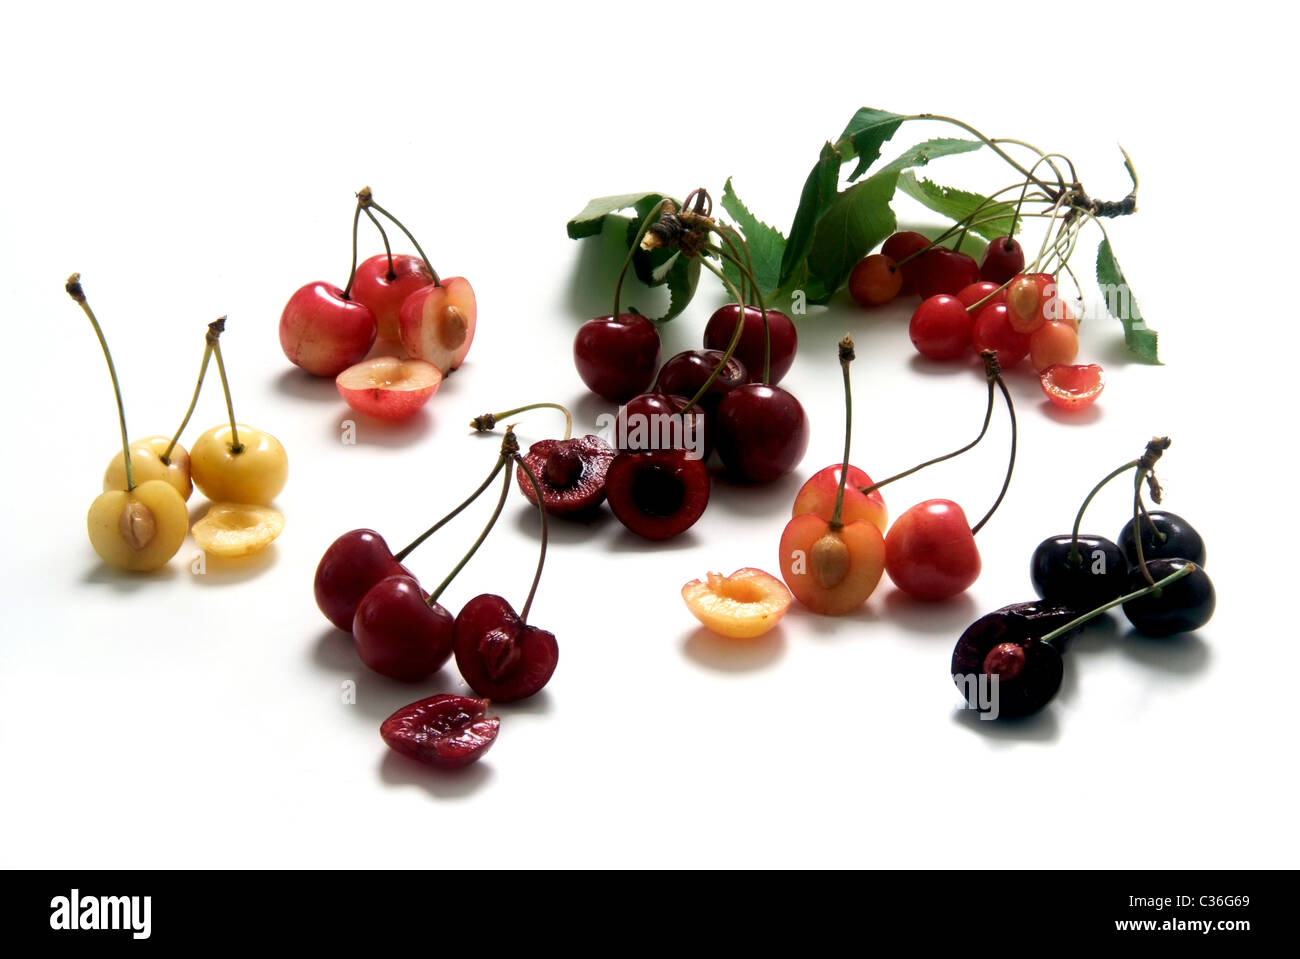 Cherry varieties from left: vlnr: Schwefelkirsche, Braunauer, Porzellankirsche, Kassins Frühe, Altenburger Knorpelkirsche, Wildf Stock Photo